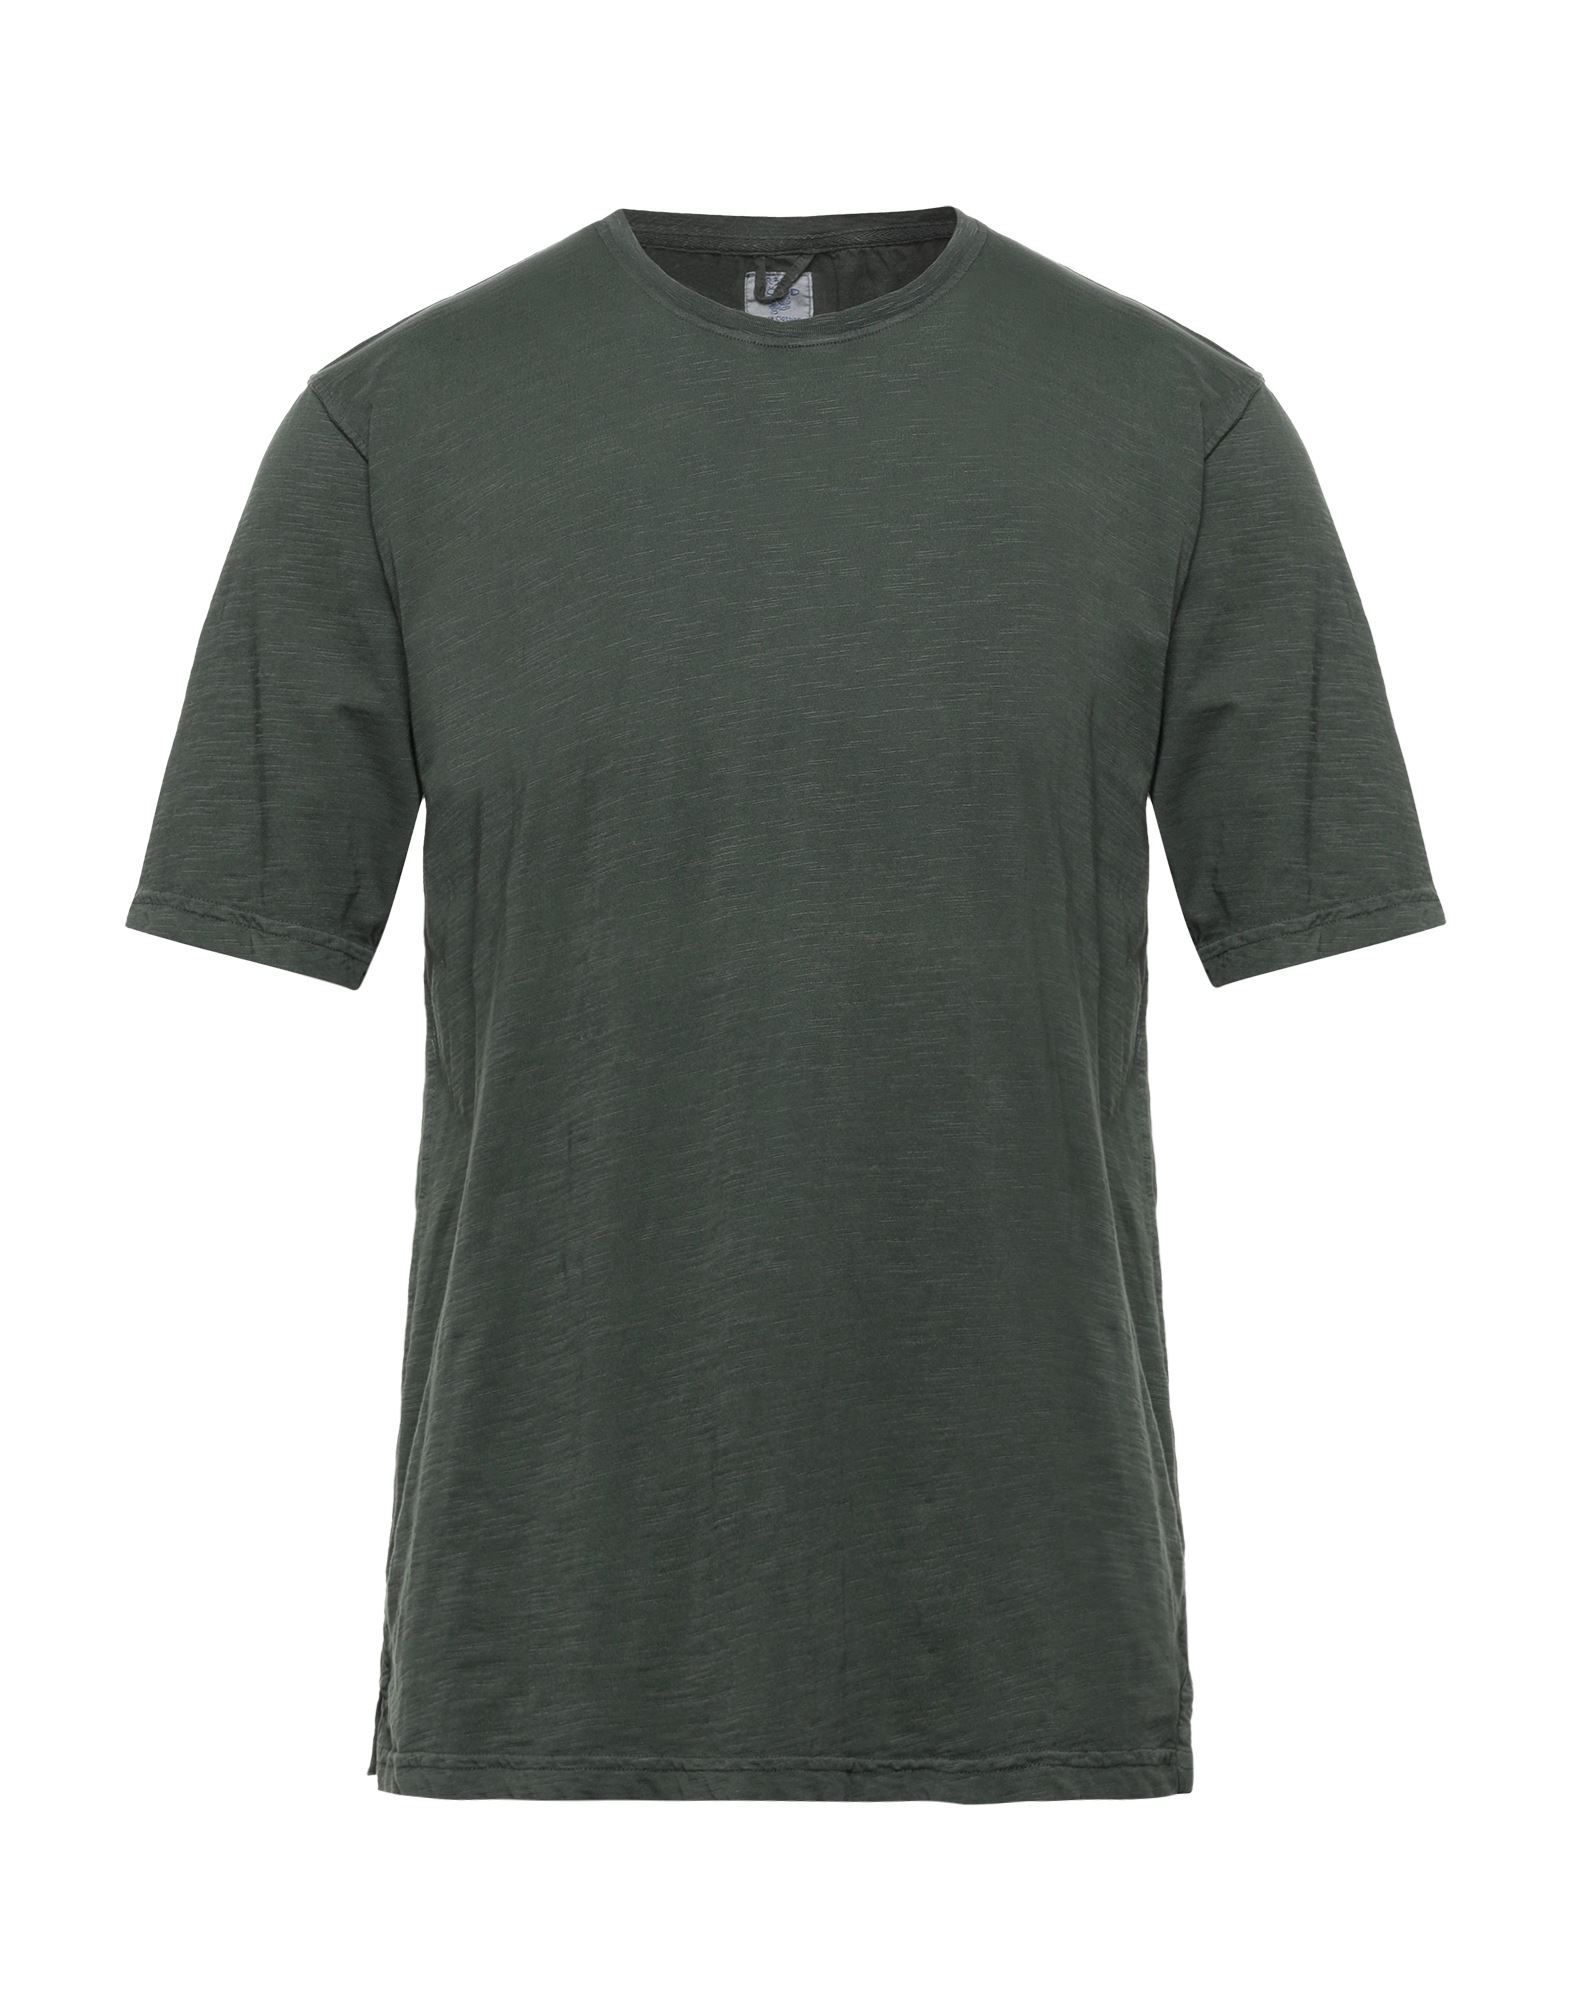 R3d Wöôd Man T-shirt Military Green Size L Cotton